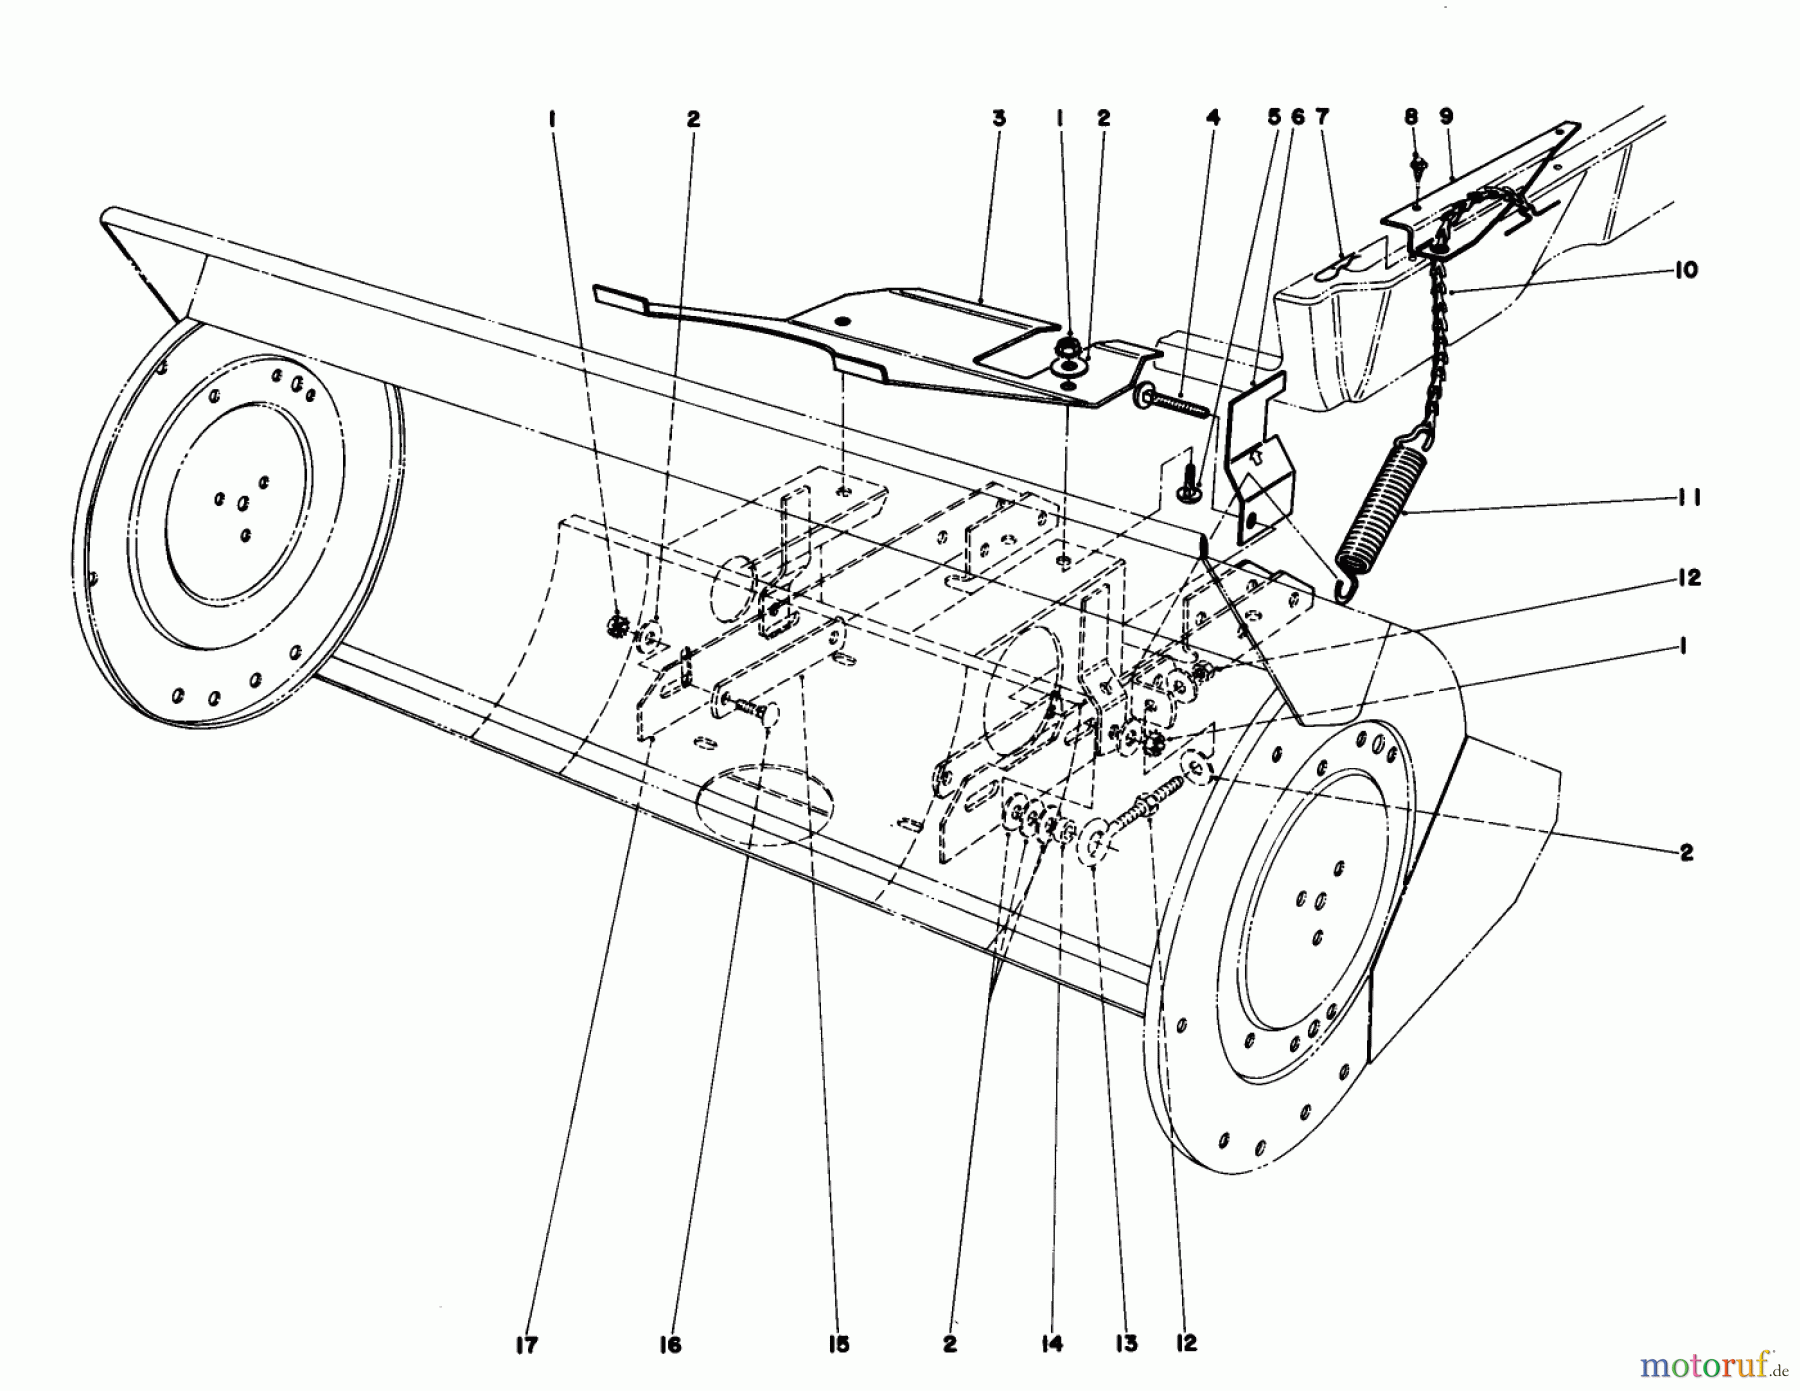  Toro Neu Mowers, Lawn & Garden Tractor Seite 1 57300 (8-32) - Toro 8-32 Front Engine Rider, 1982 (2000001-2999999) 36